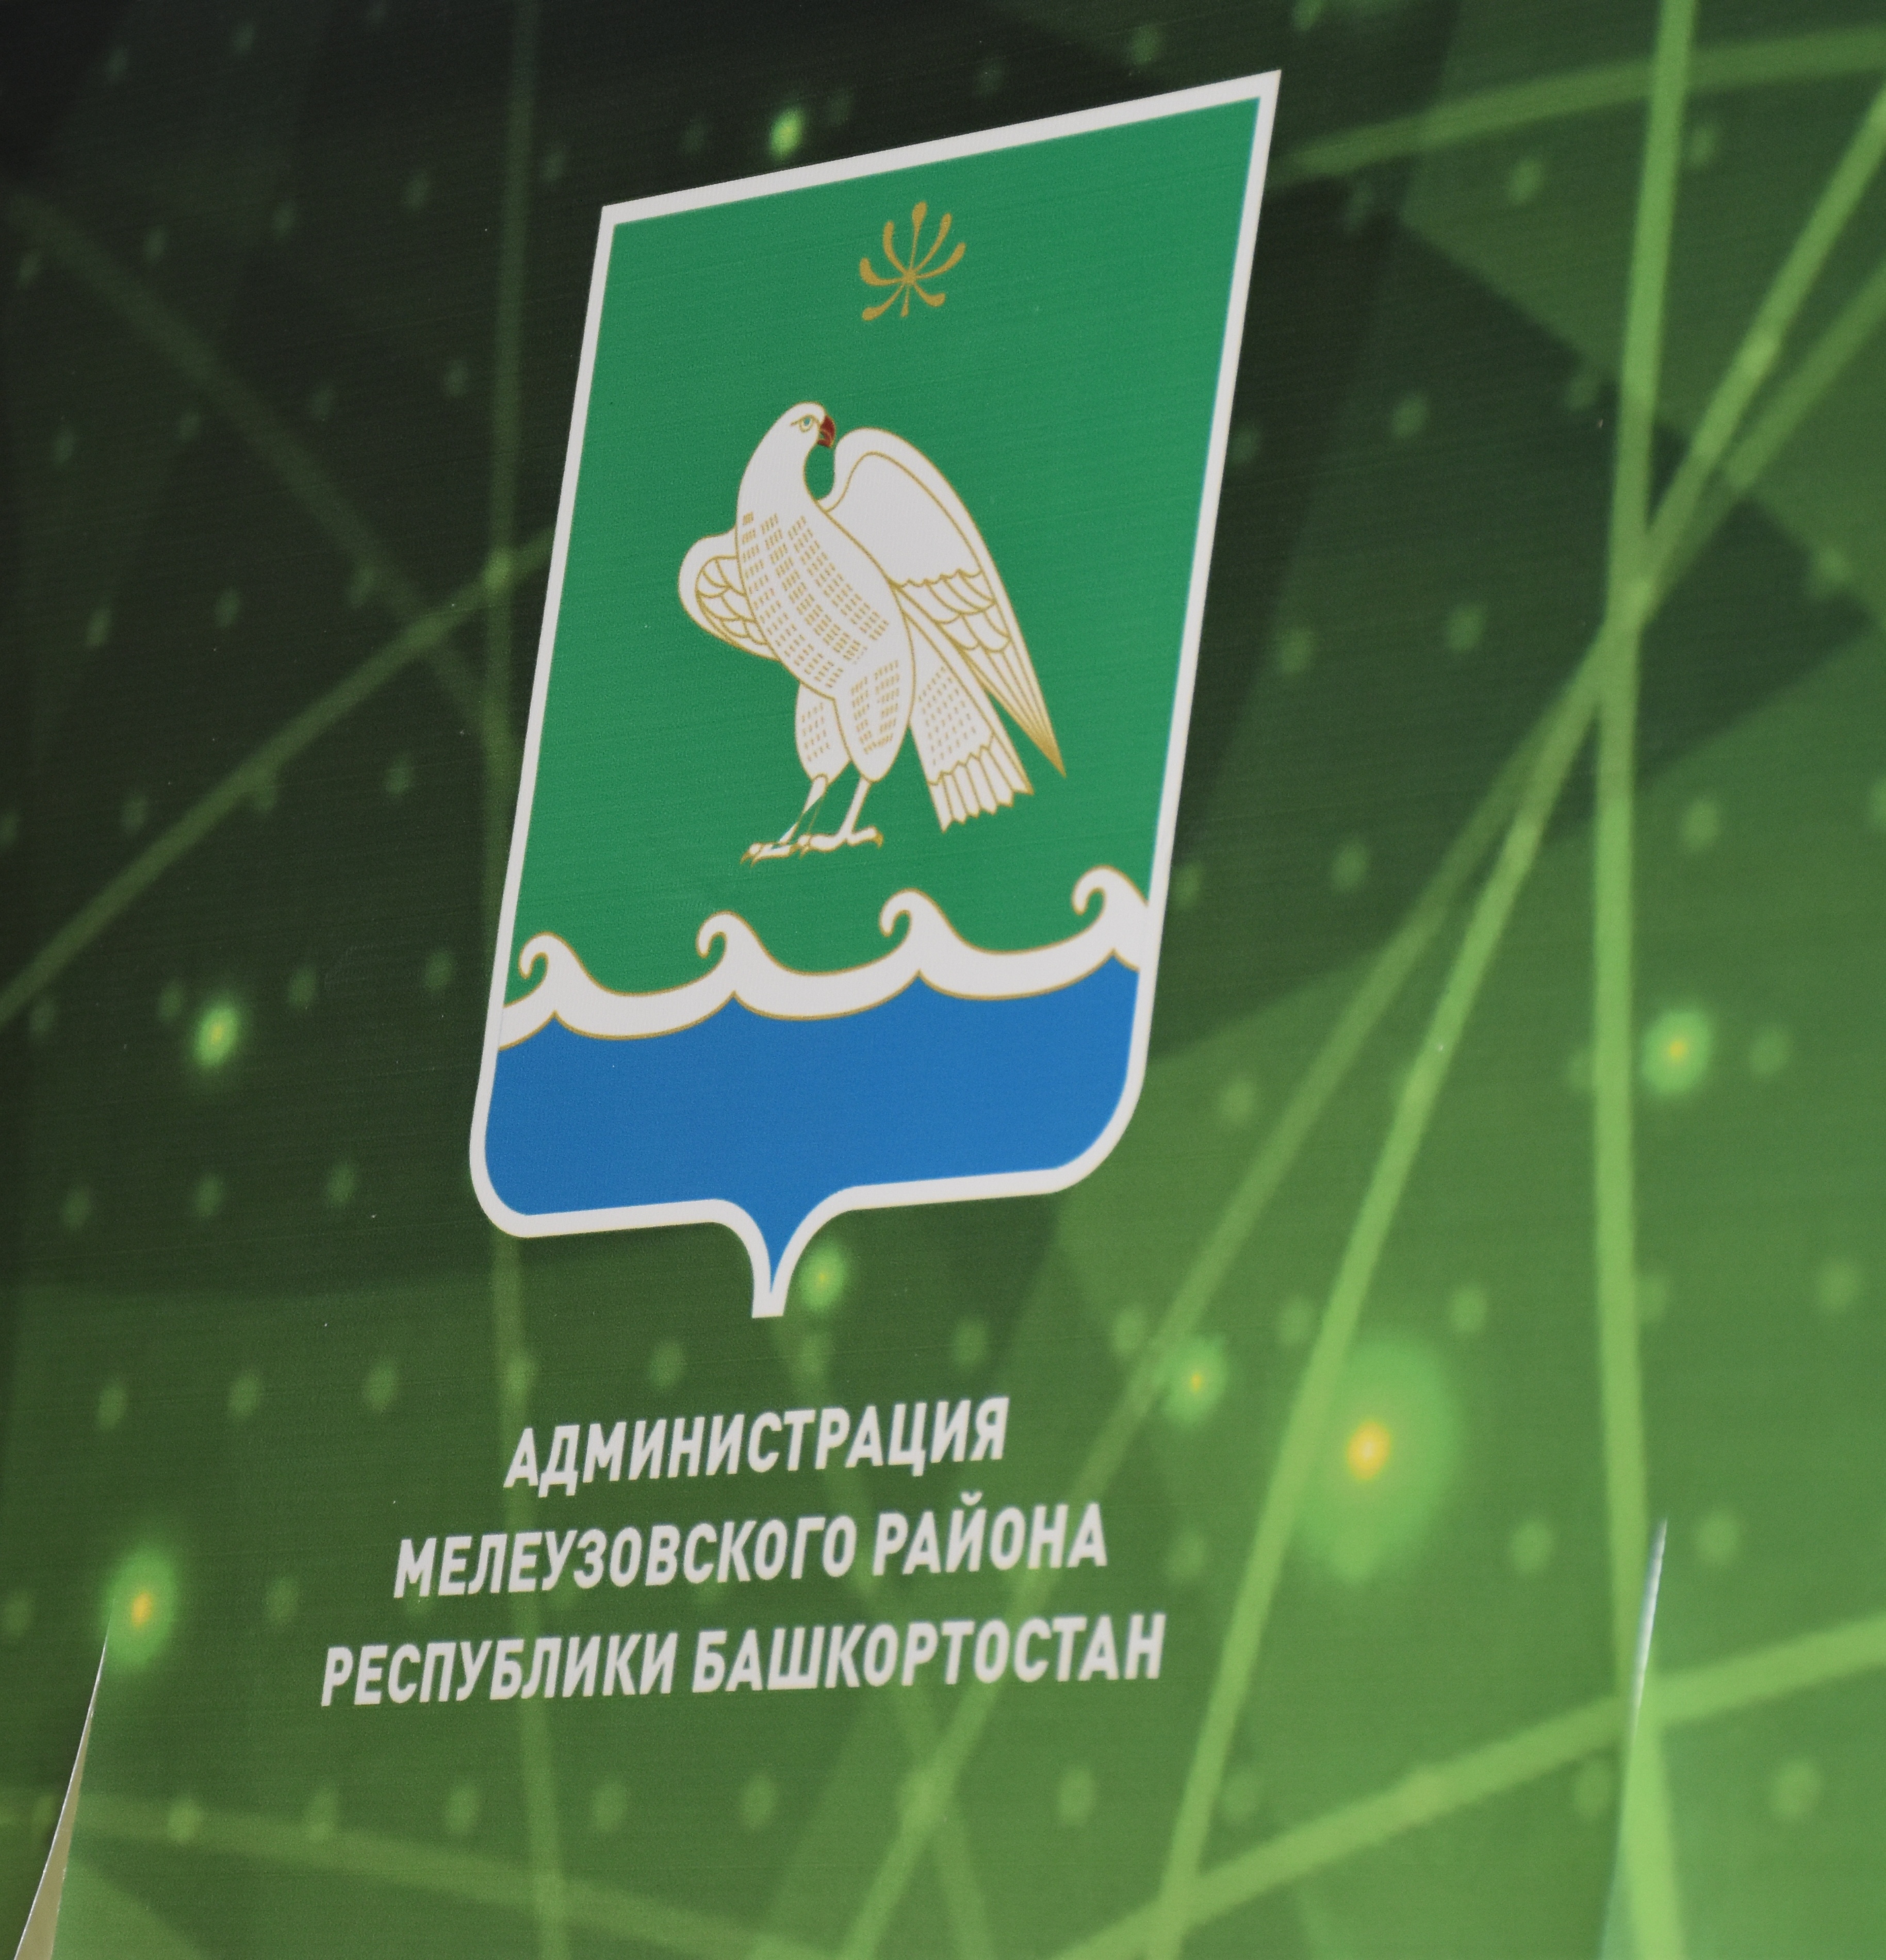 Административная комиссия Мелеузовского района предупреждает: выкинул мусор мимо контейнера - получи штраф!